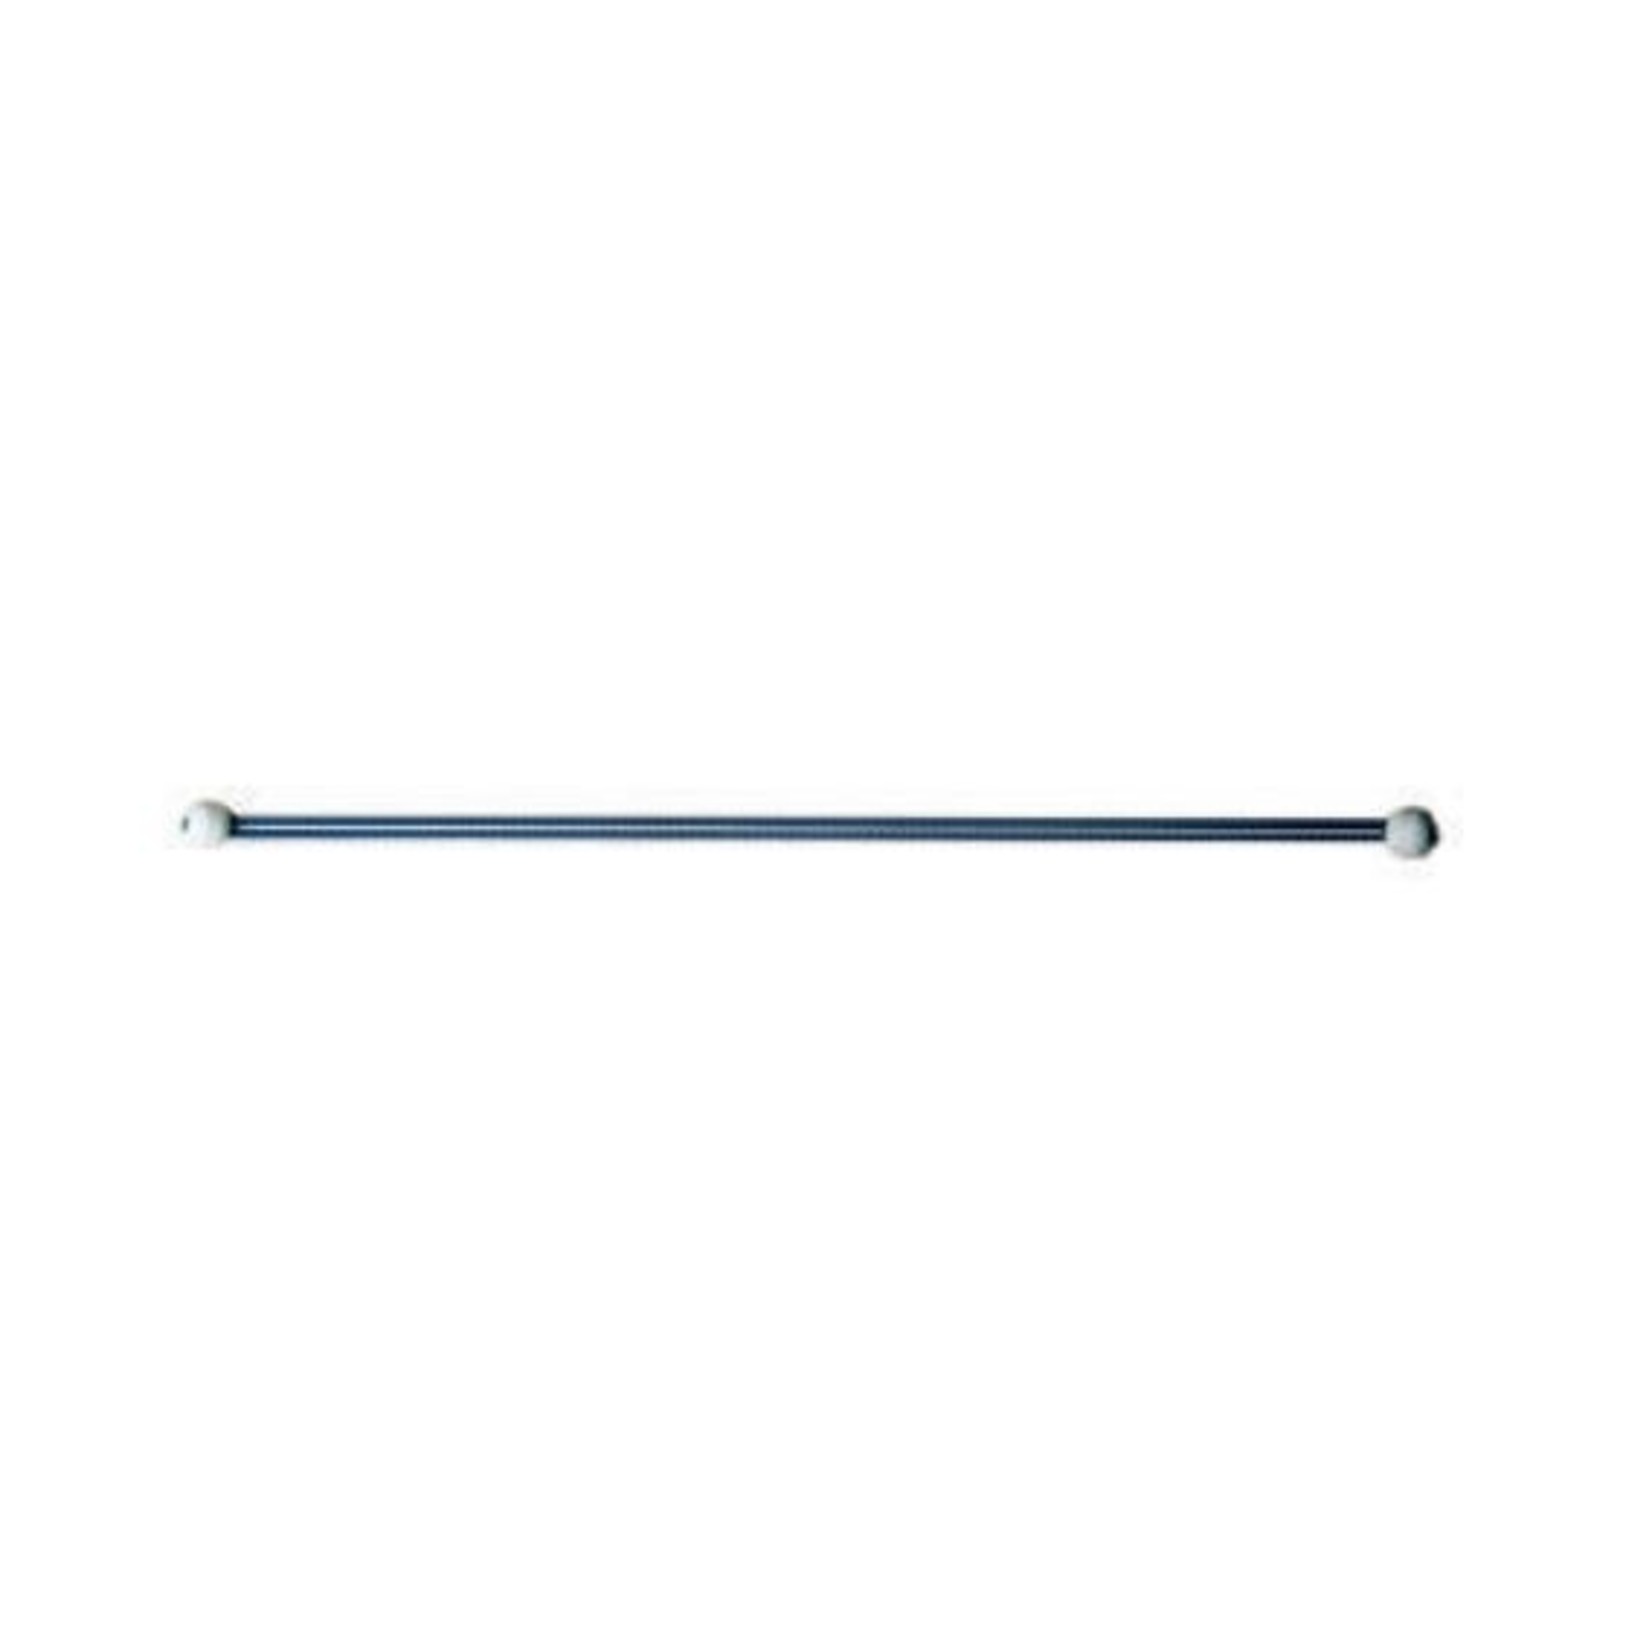 U-Rope Sail Tie 50cm. blue shock cord (4)